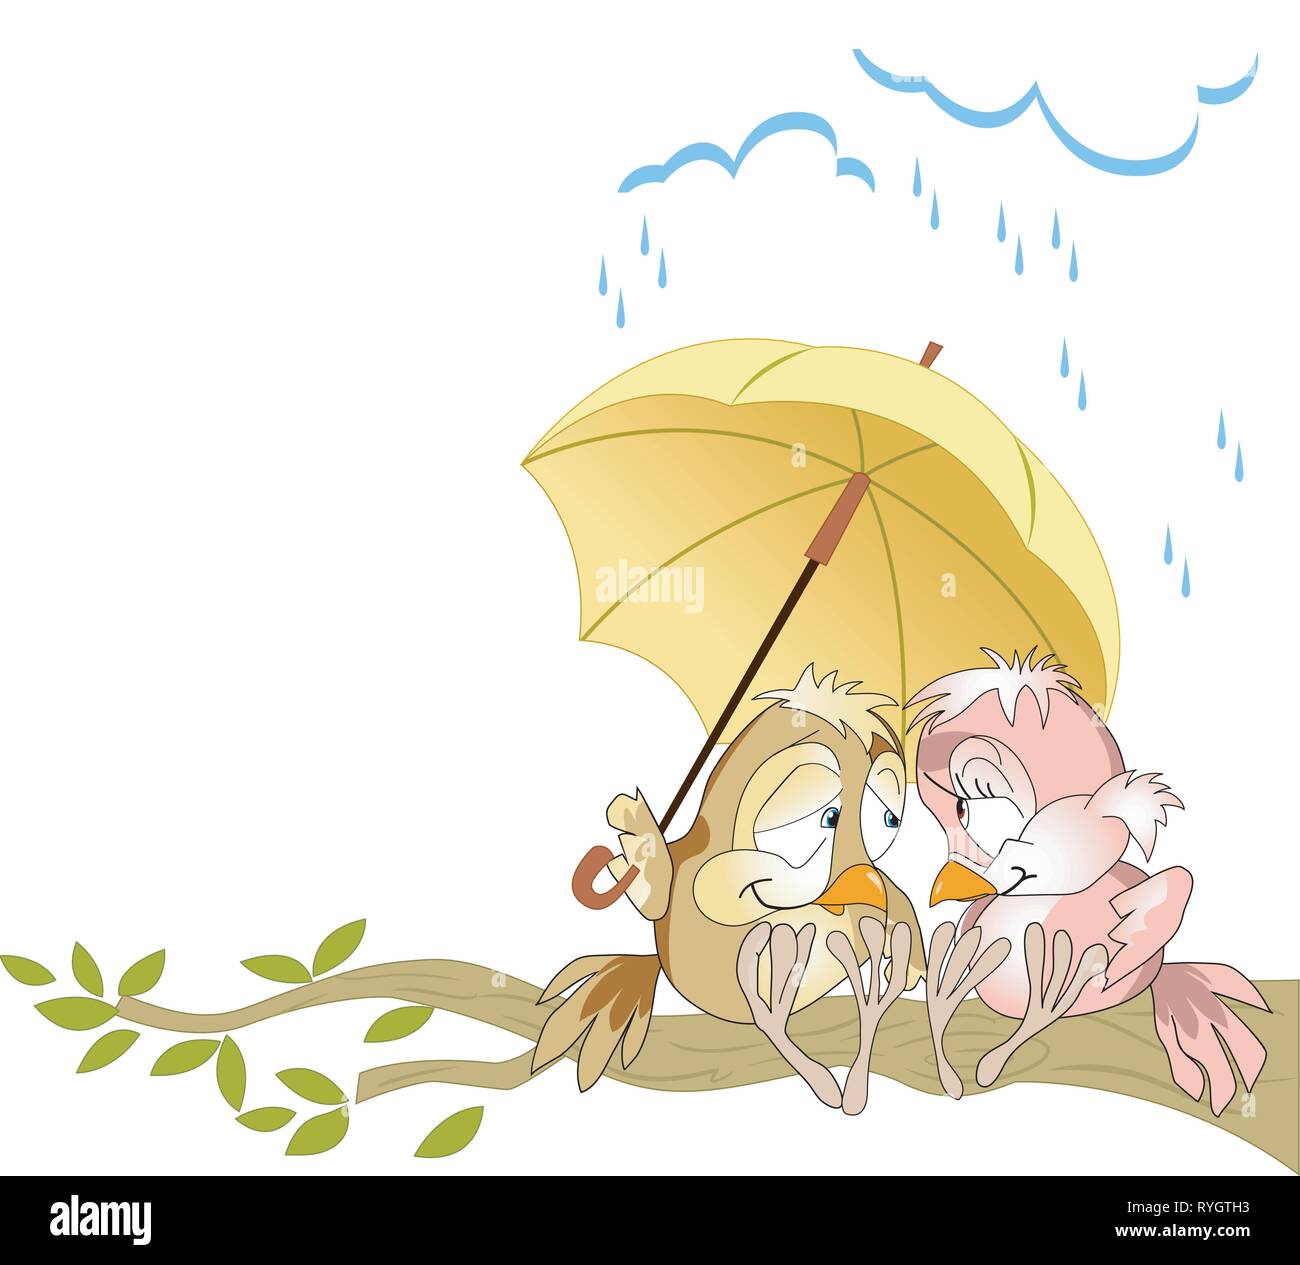 Die Abbildung zeigt ein Paar in Liebe Vögel sitzen auf einem Ast unter einem gelben Regenschirm. Die Abbildung als eine lustige karte, im Comic-stil, auf sep Stock Vektor